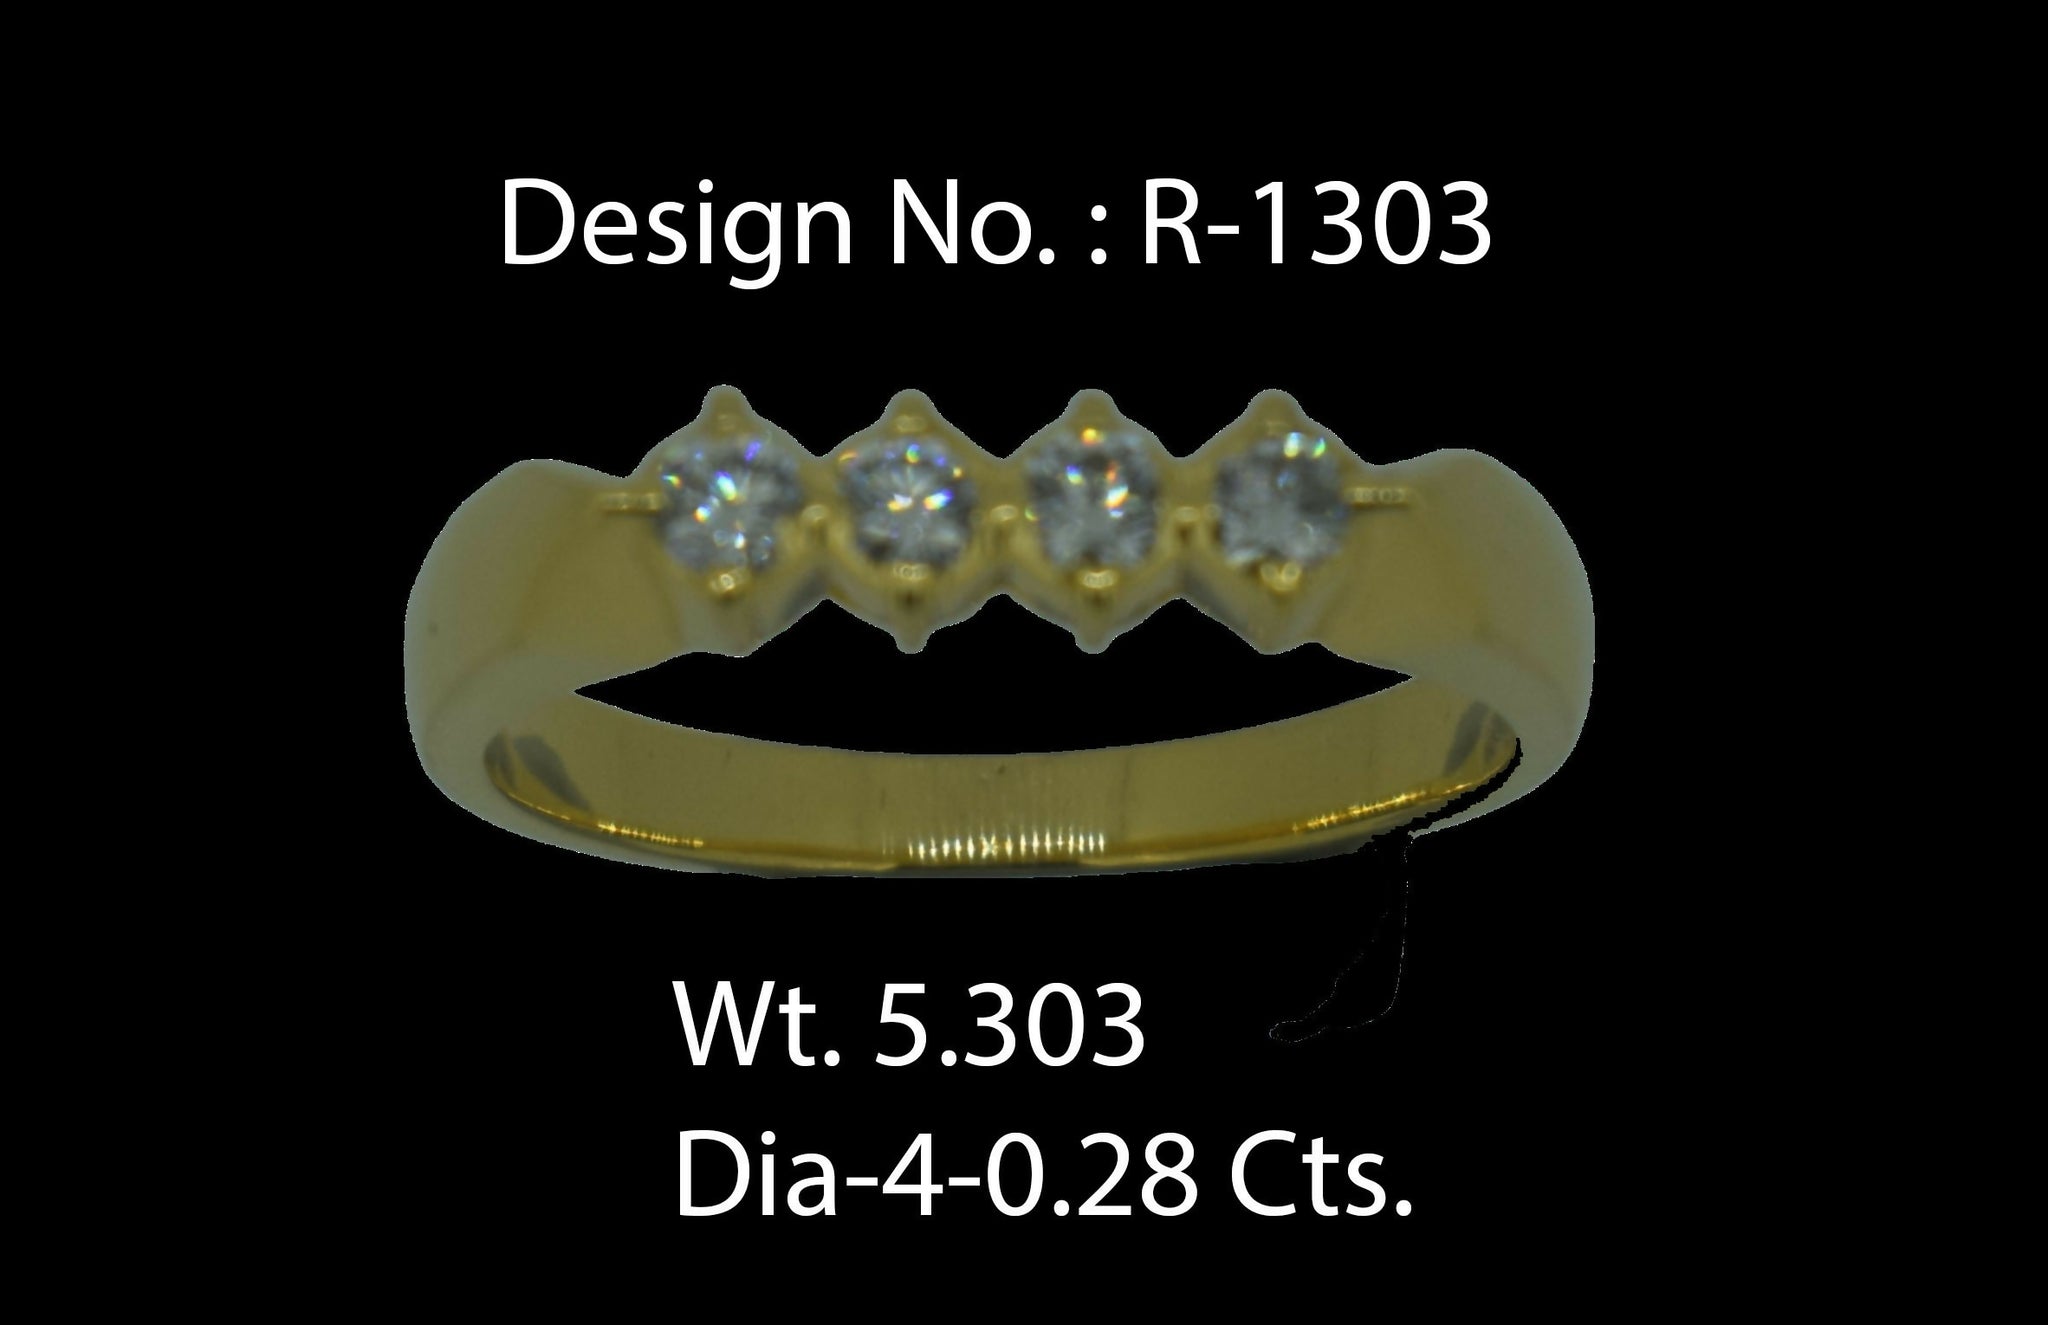 Diamond Ring Sarafa Bazar India